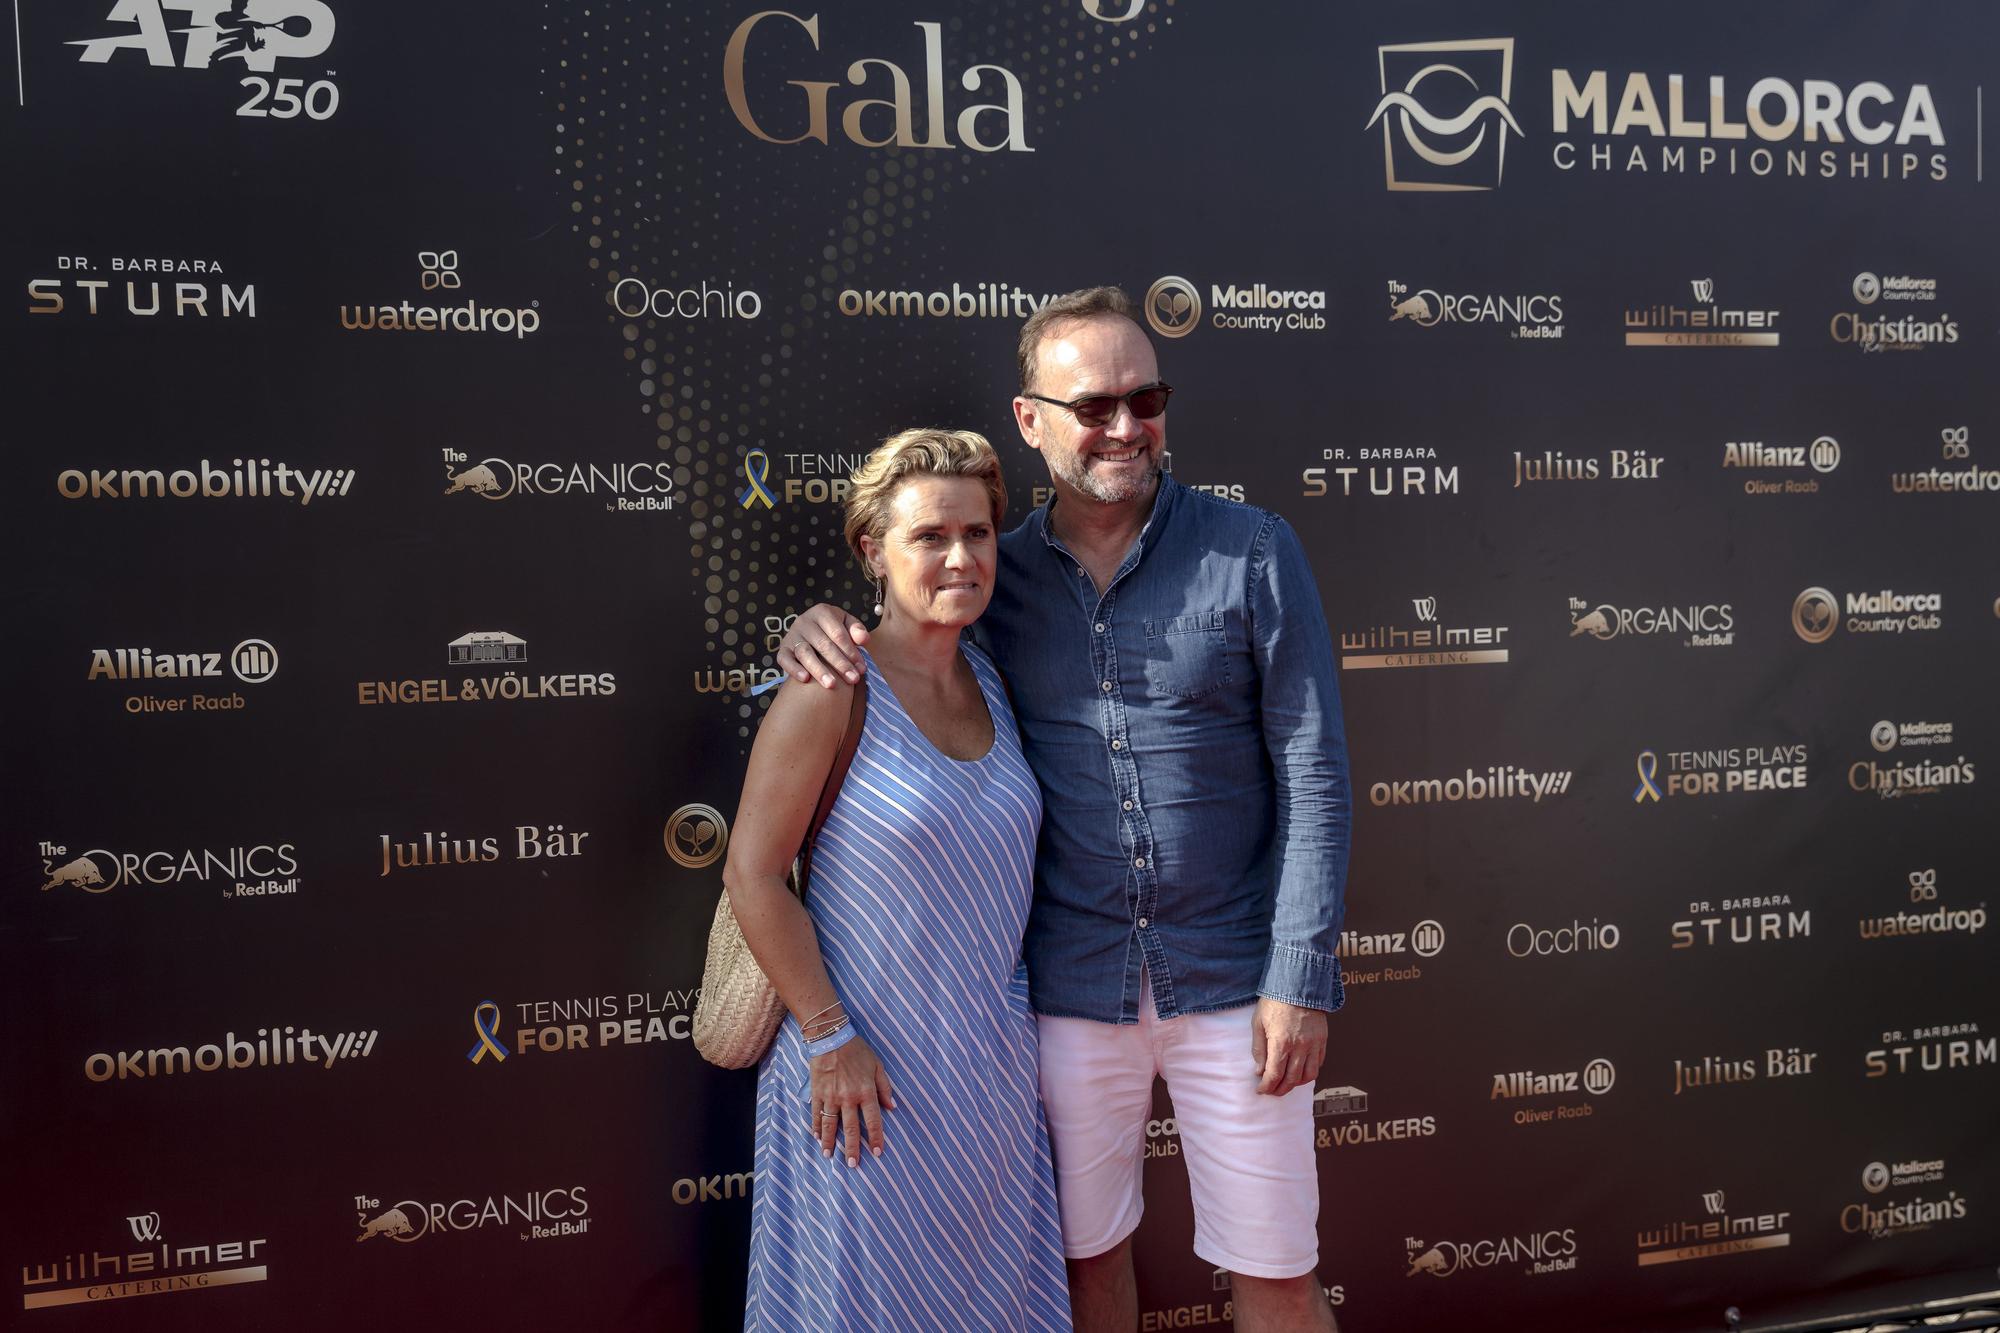 Gala de apertura del Mallorca Championships 2022